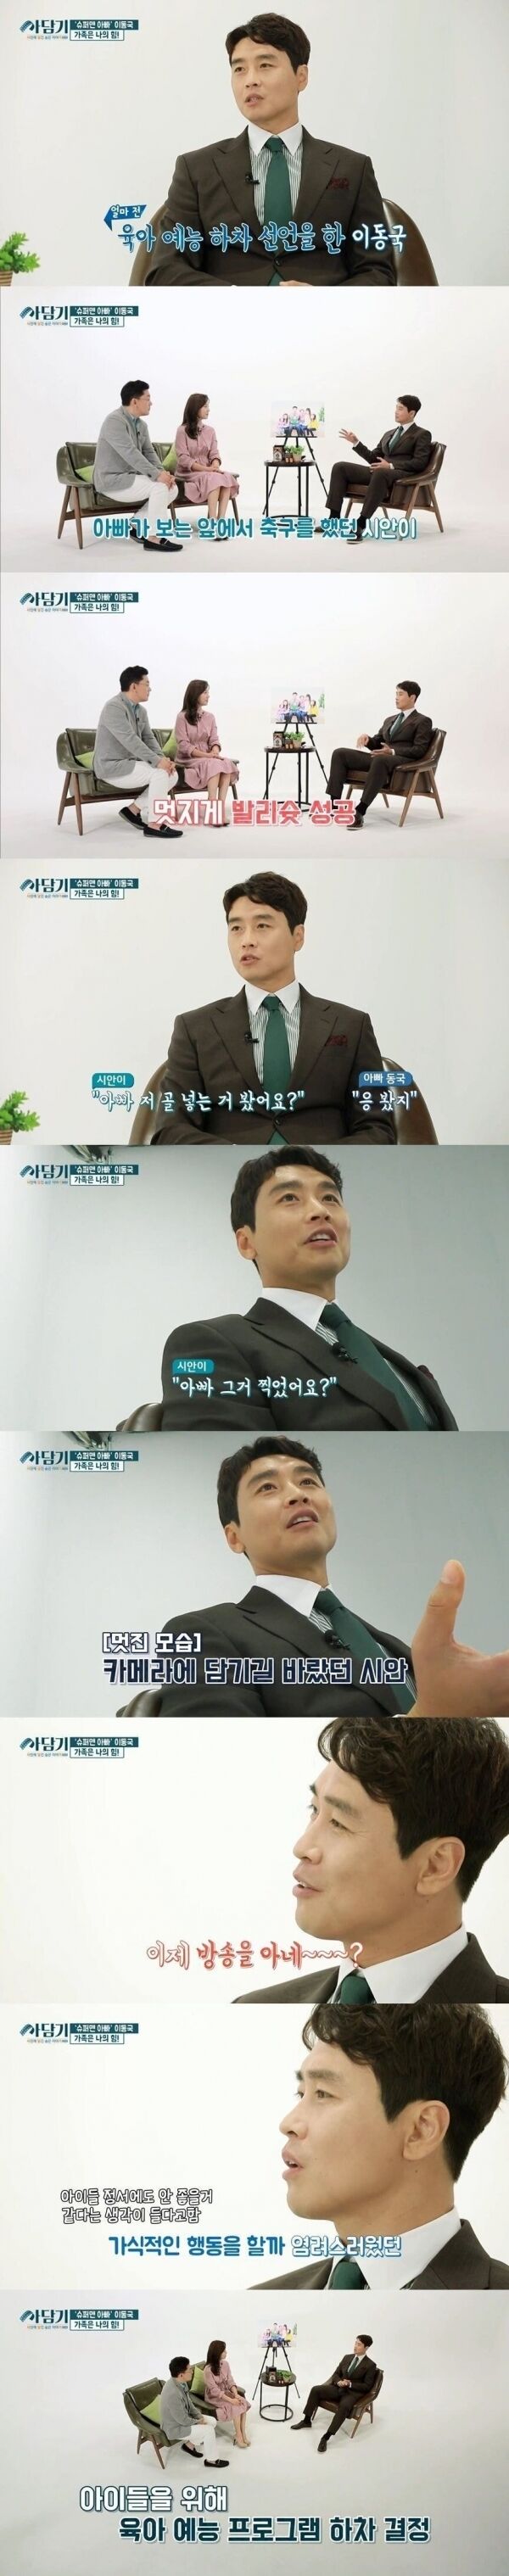 출처: ⓒ JTBC 사담기 캡쳐